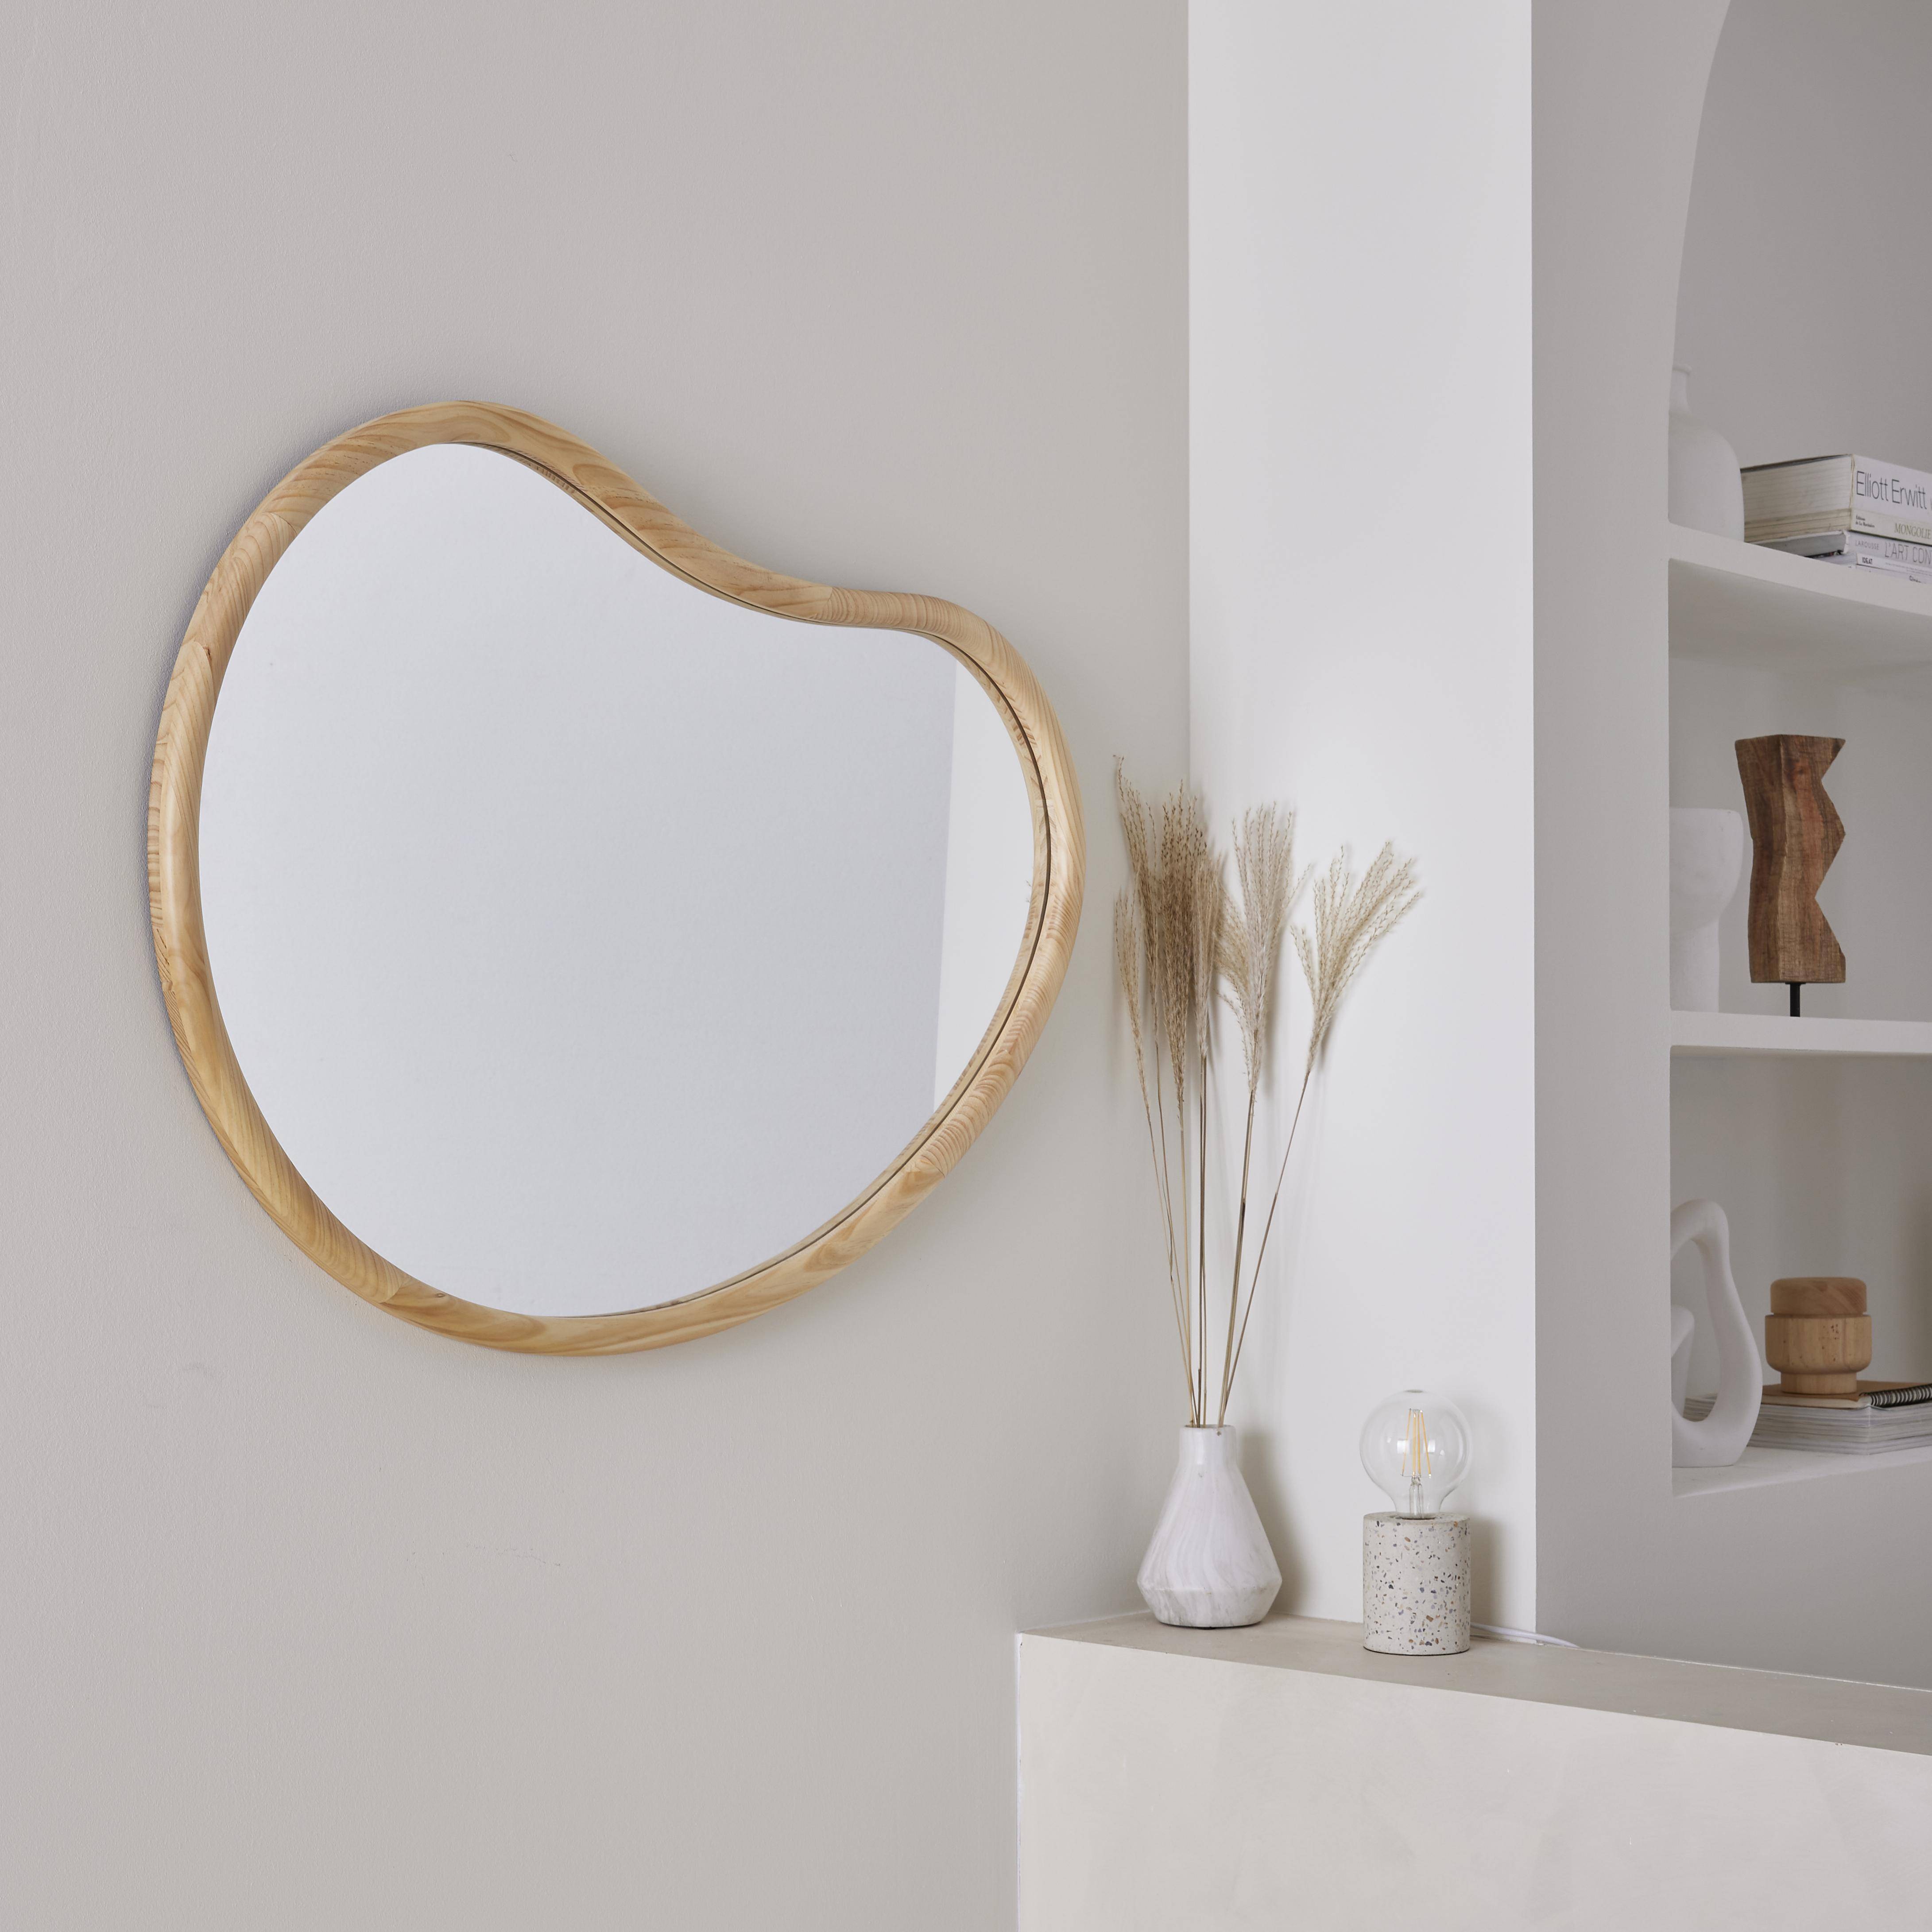 Miroir organique en bois de sapin 95cm épaisseur 3cm coloris naturel idéal entrée, chambre ou salle de bain Photo2